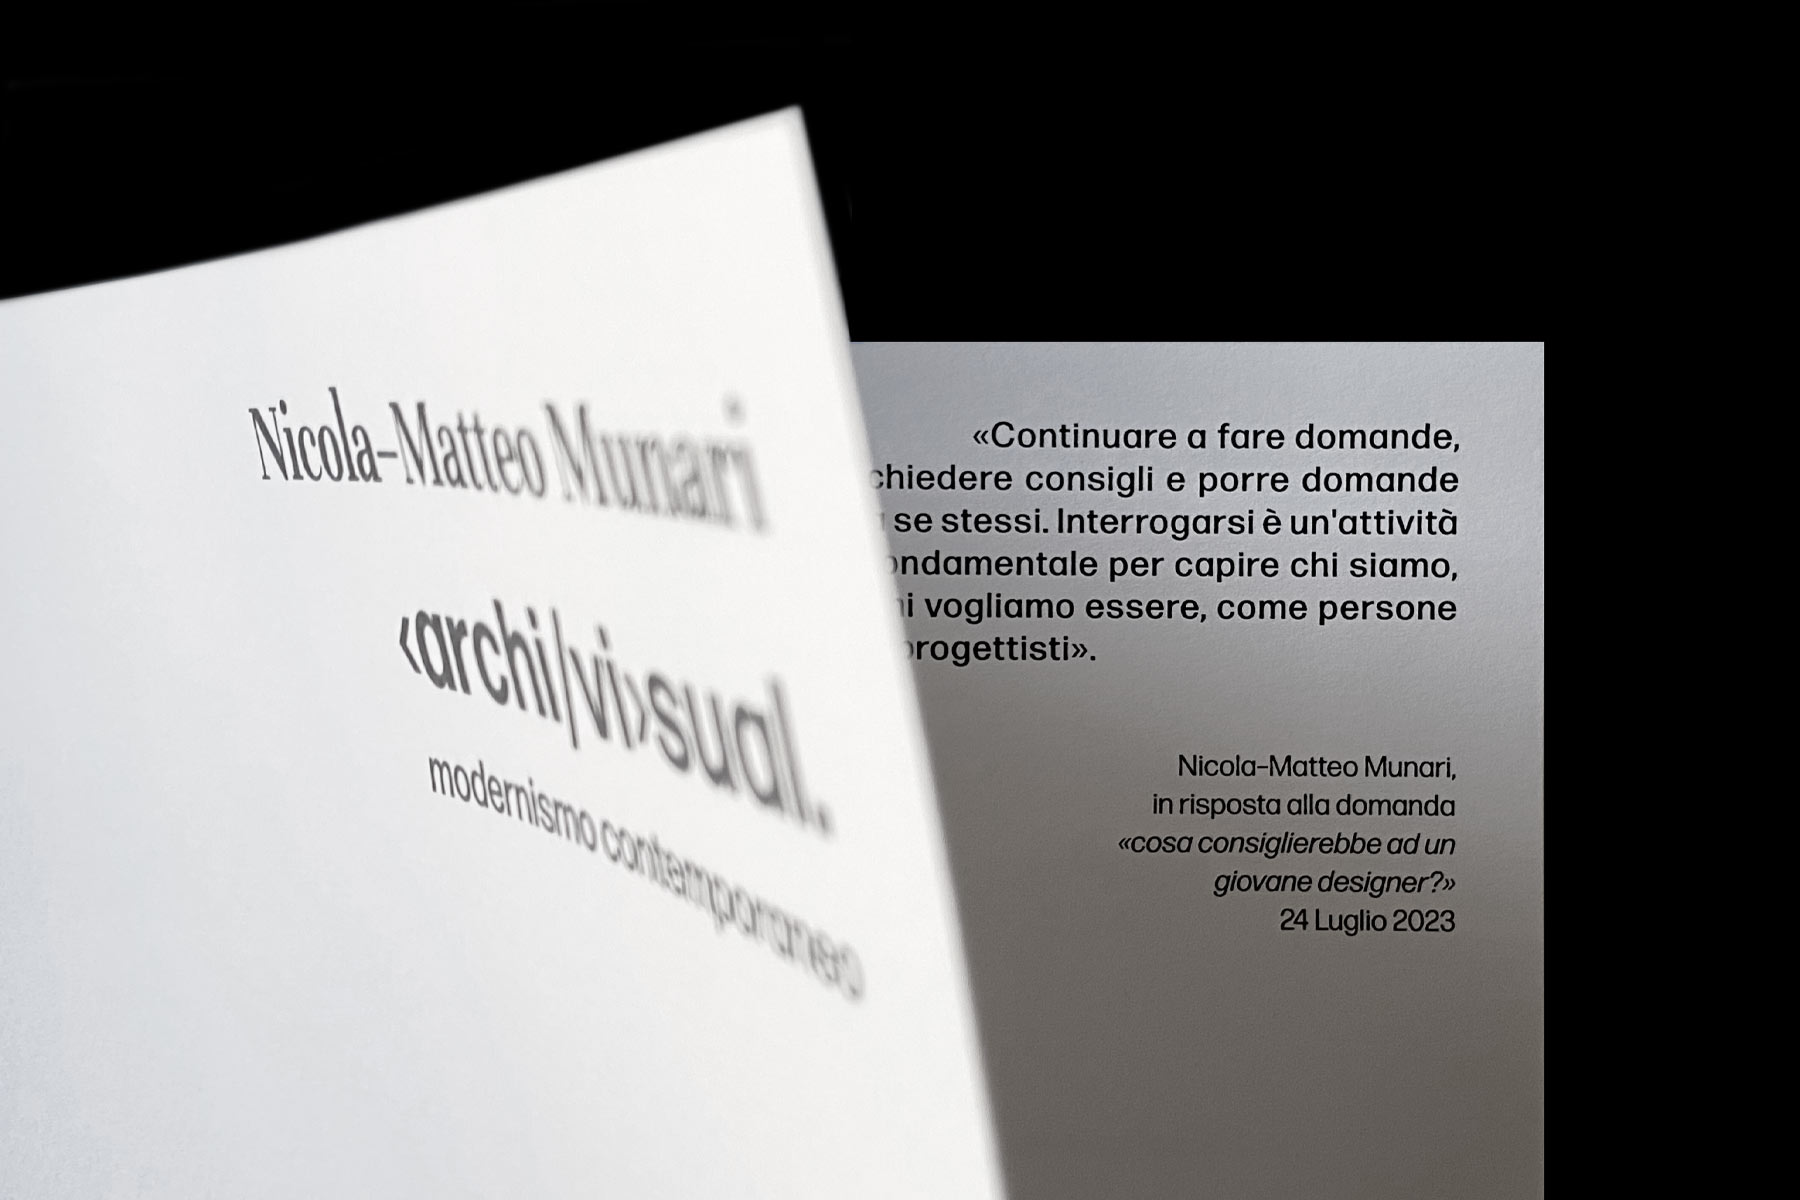 nicola-matteo munari archivisual modernismo contemporaneo